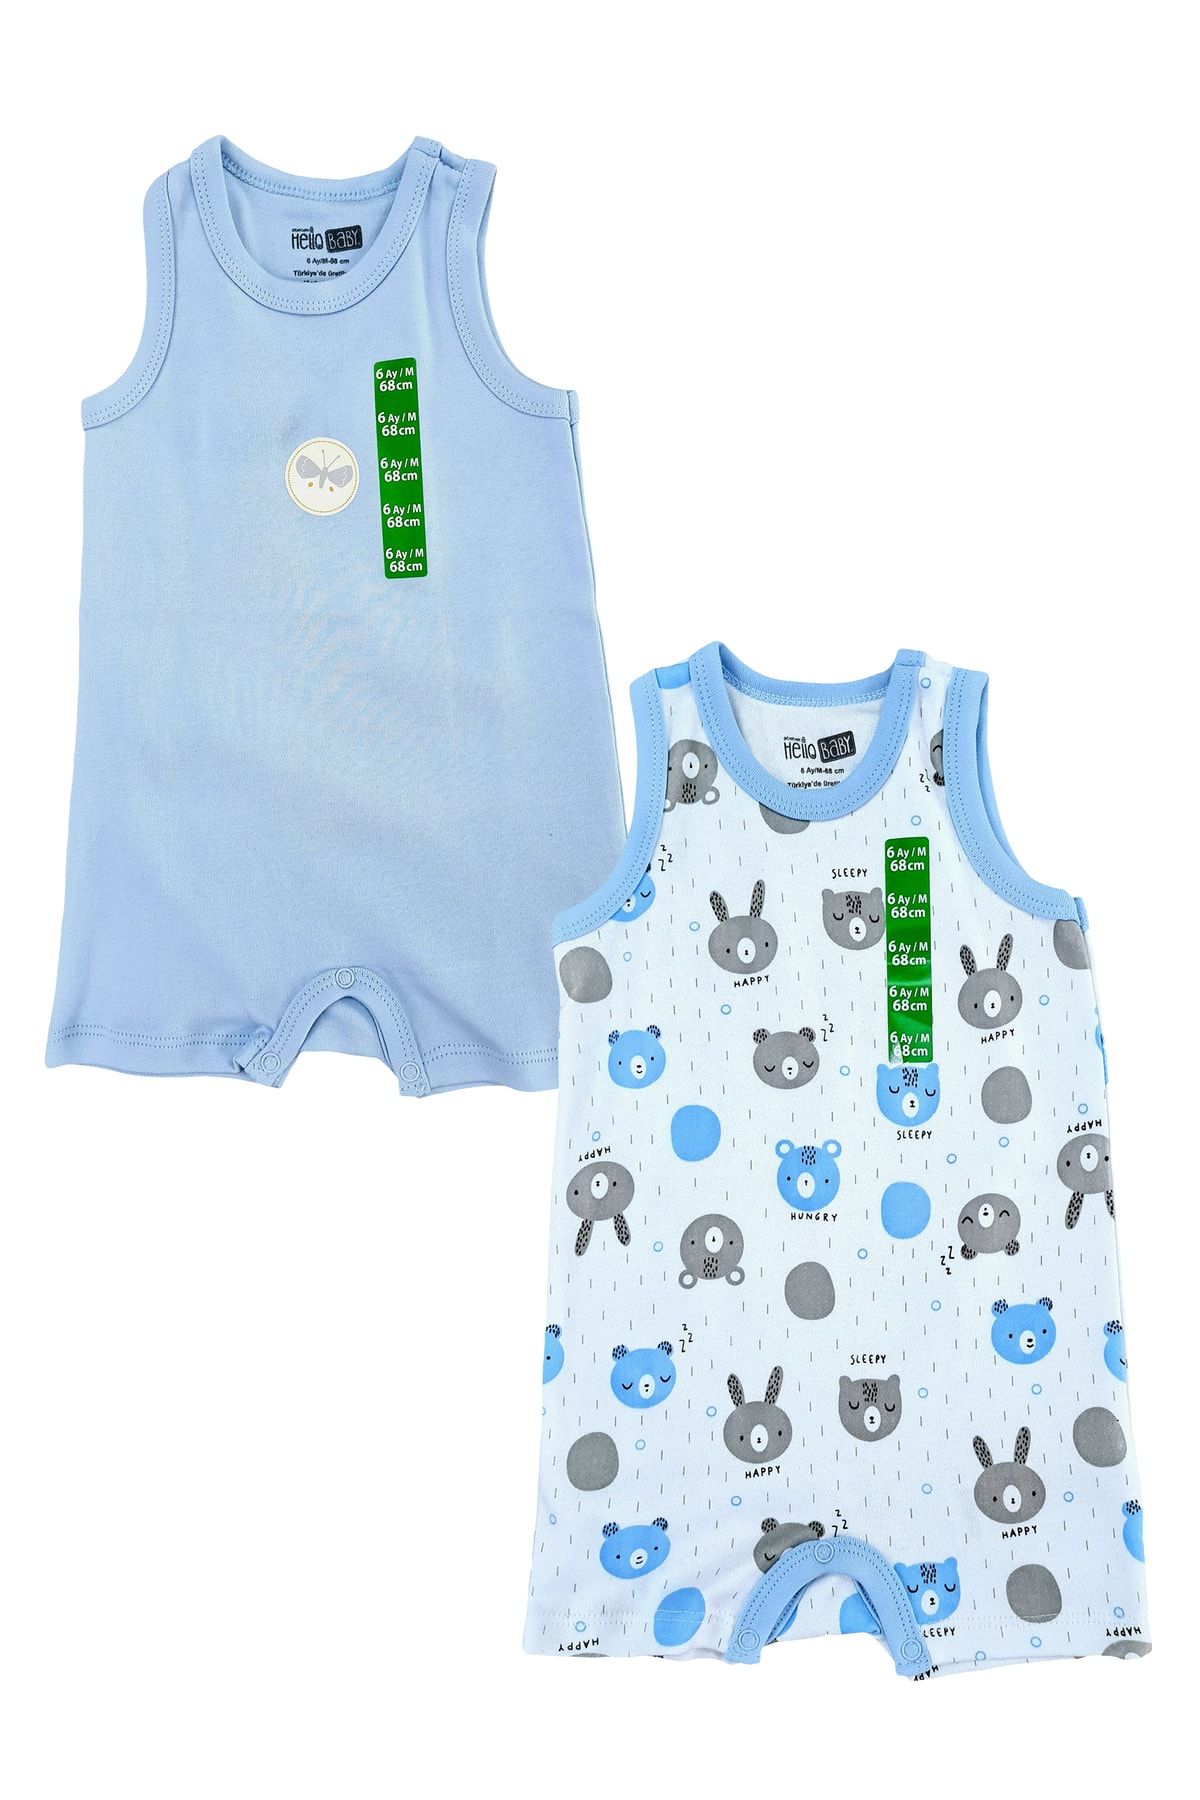 Hello Baby Erkek bebek yazlık askılı tulum ikili bebek set yazlık bebek ürünleri